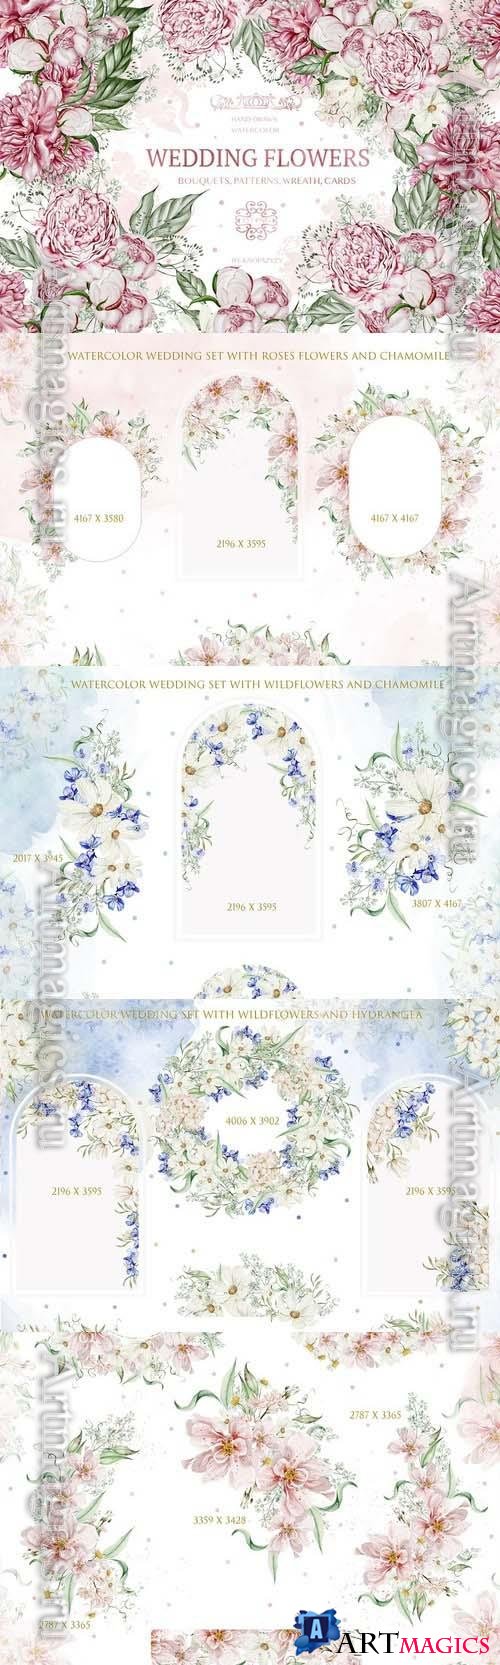 Watercolor Wedding Flowers